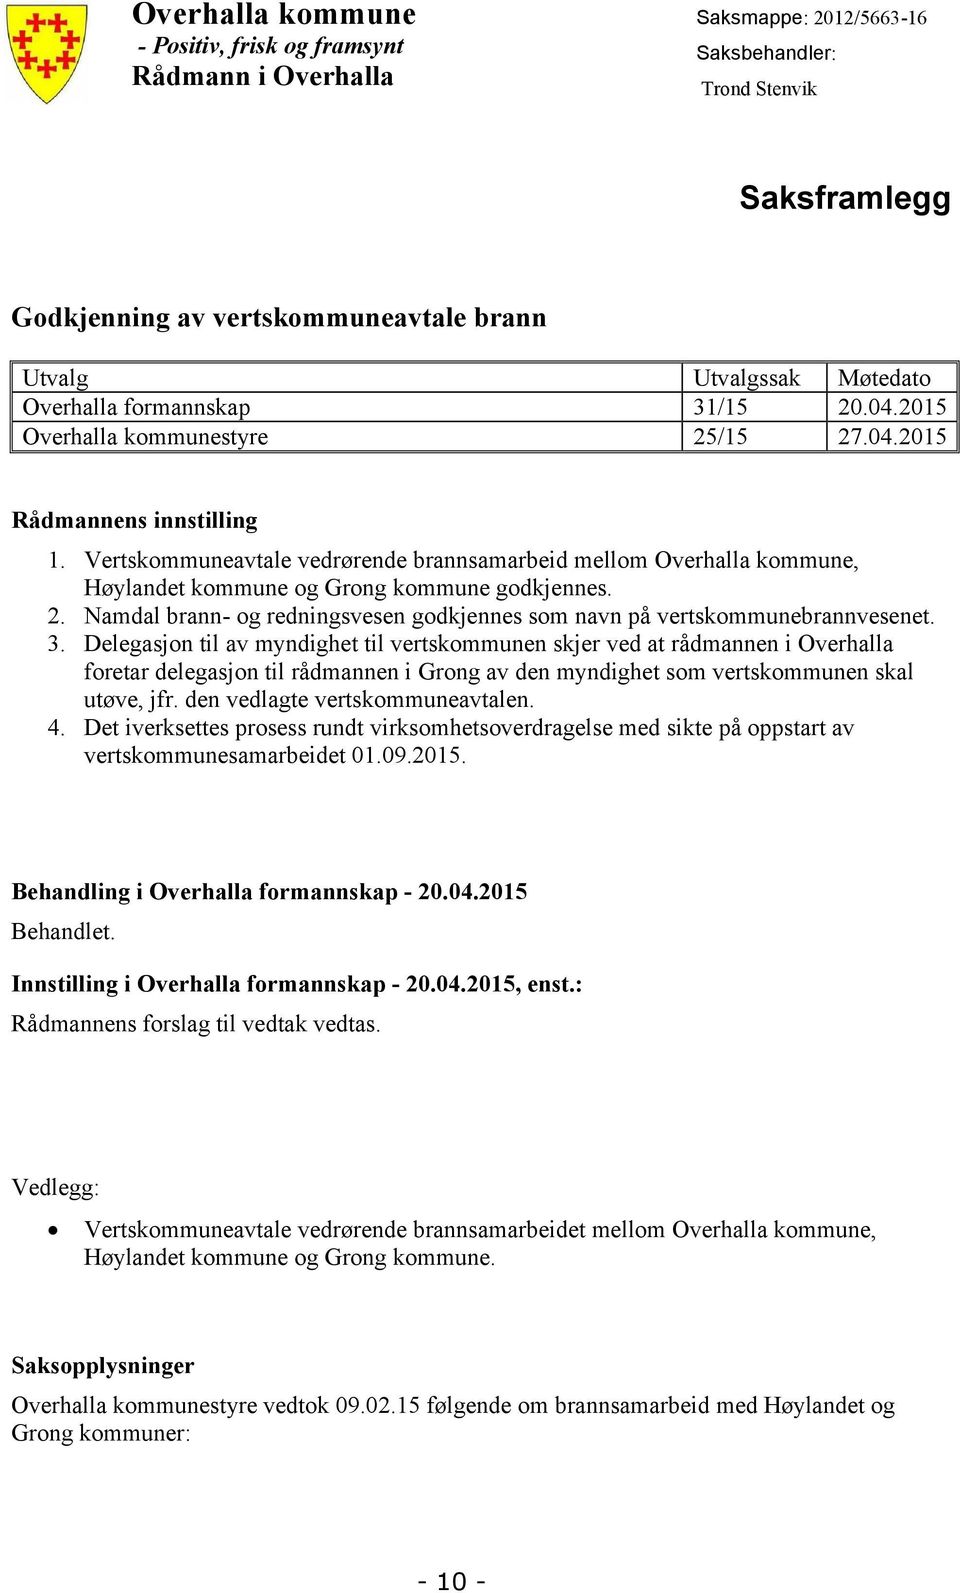 Vertskommuneavtale vedrørende brannsamarbeid mellom Overhalla kommune, Høylandet kommune og Grong kommune godkjennes. 2. Namdal brann- og redningsvesen godkjennes som navn på vertskommunebrannvesenet.